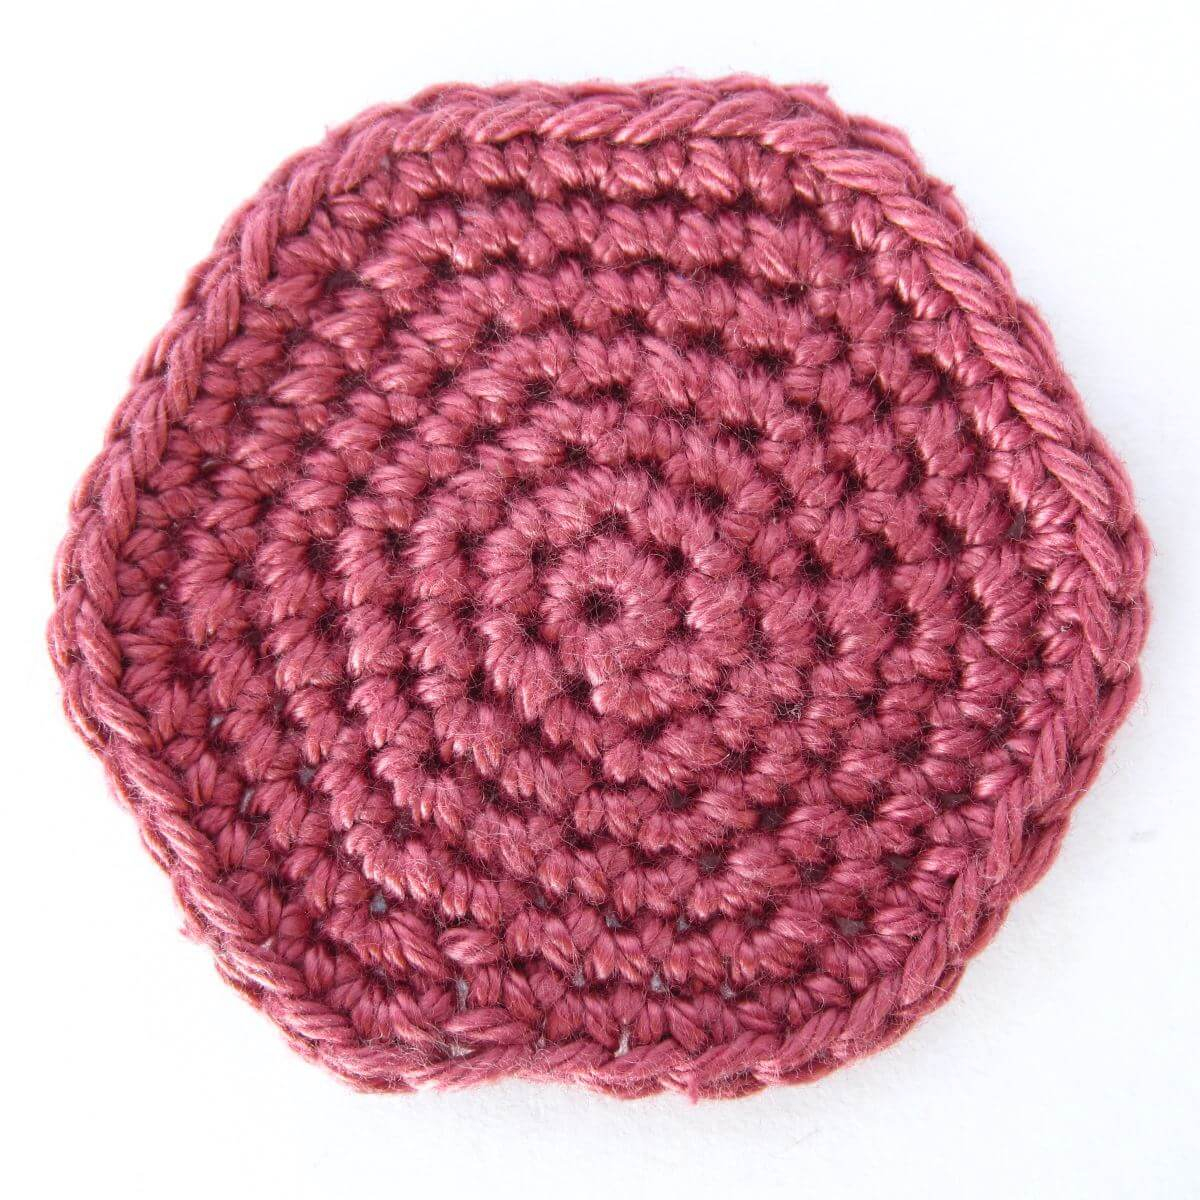 Hexagon Crochet Pattern How To Crochet Hexagons In Spiral Rounds Supergurumi